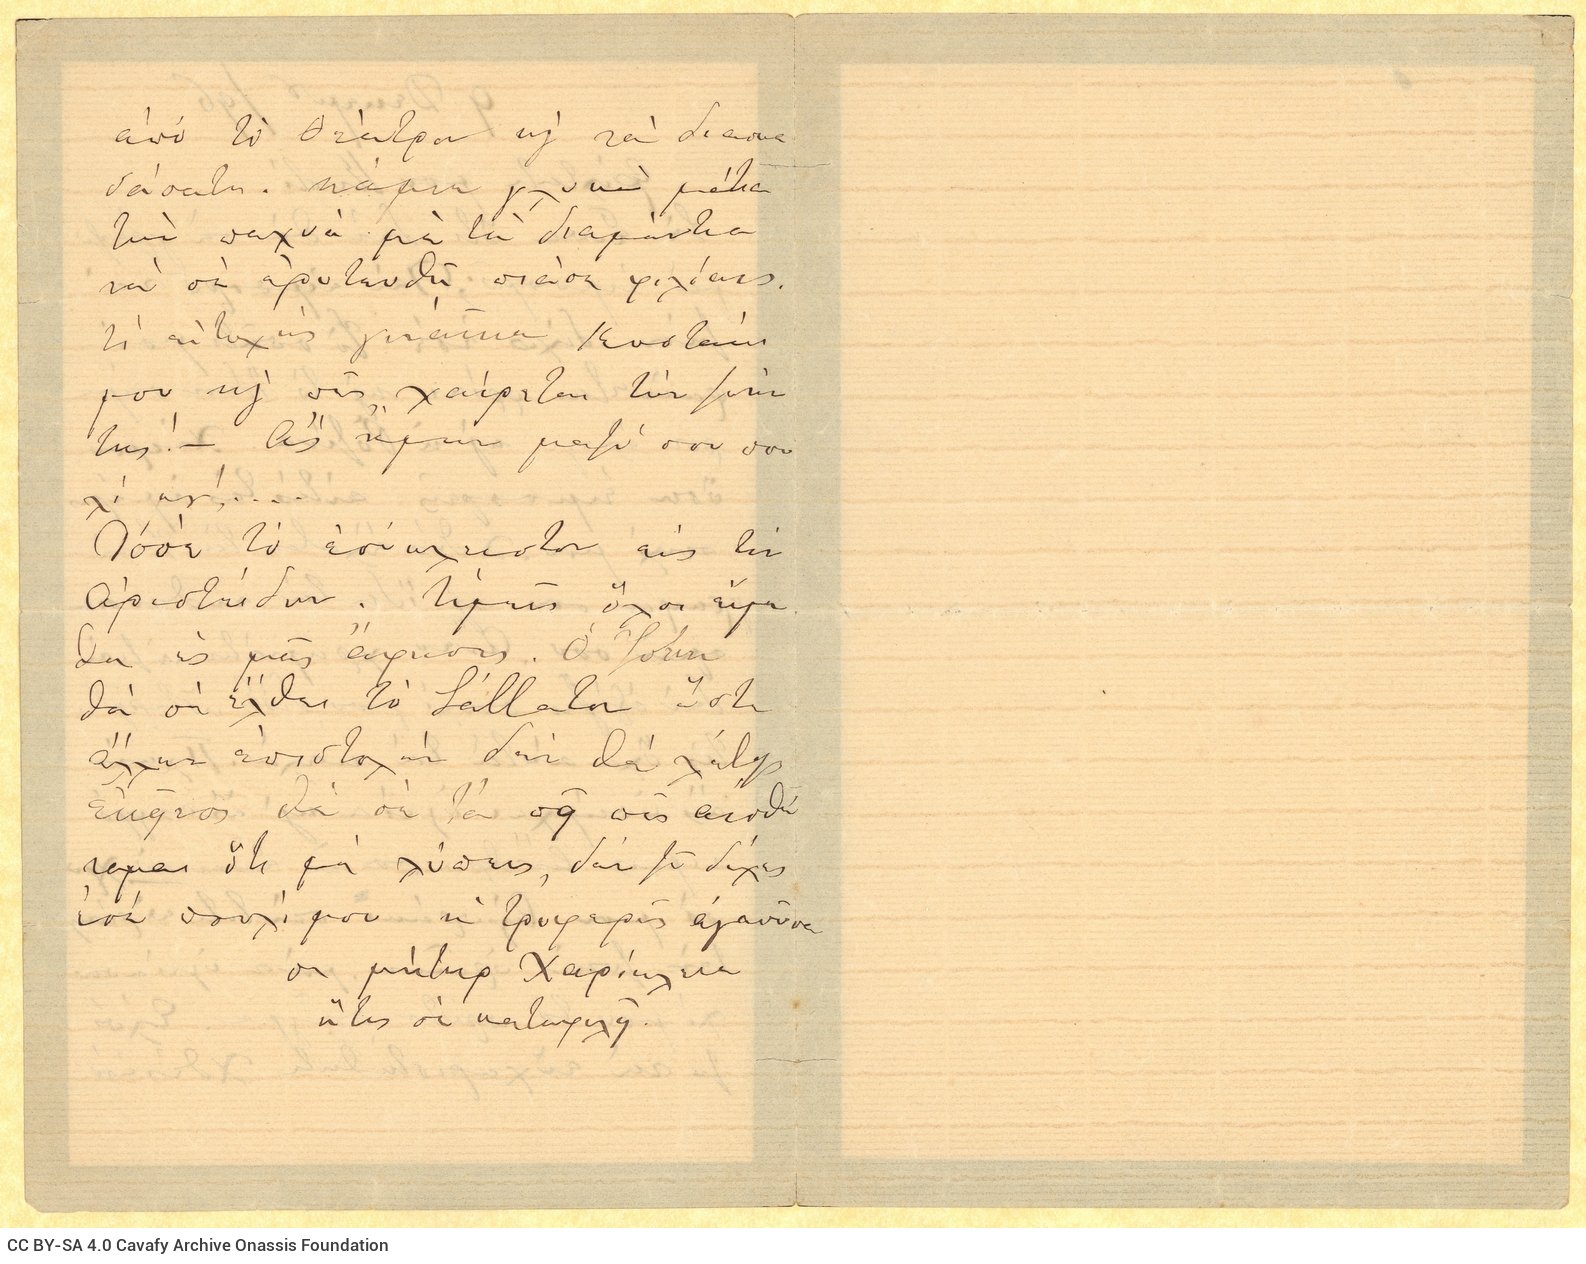 Χειρόγραφη επιστολή της Χαρίκλειας Καβάφη προς τον Καβάφη στις δύο �